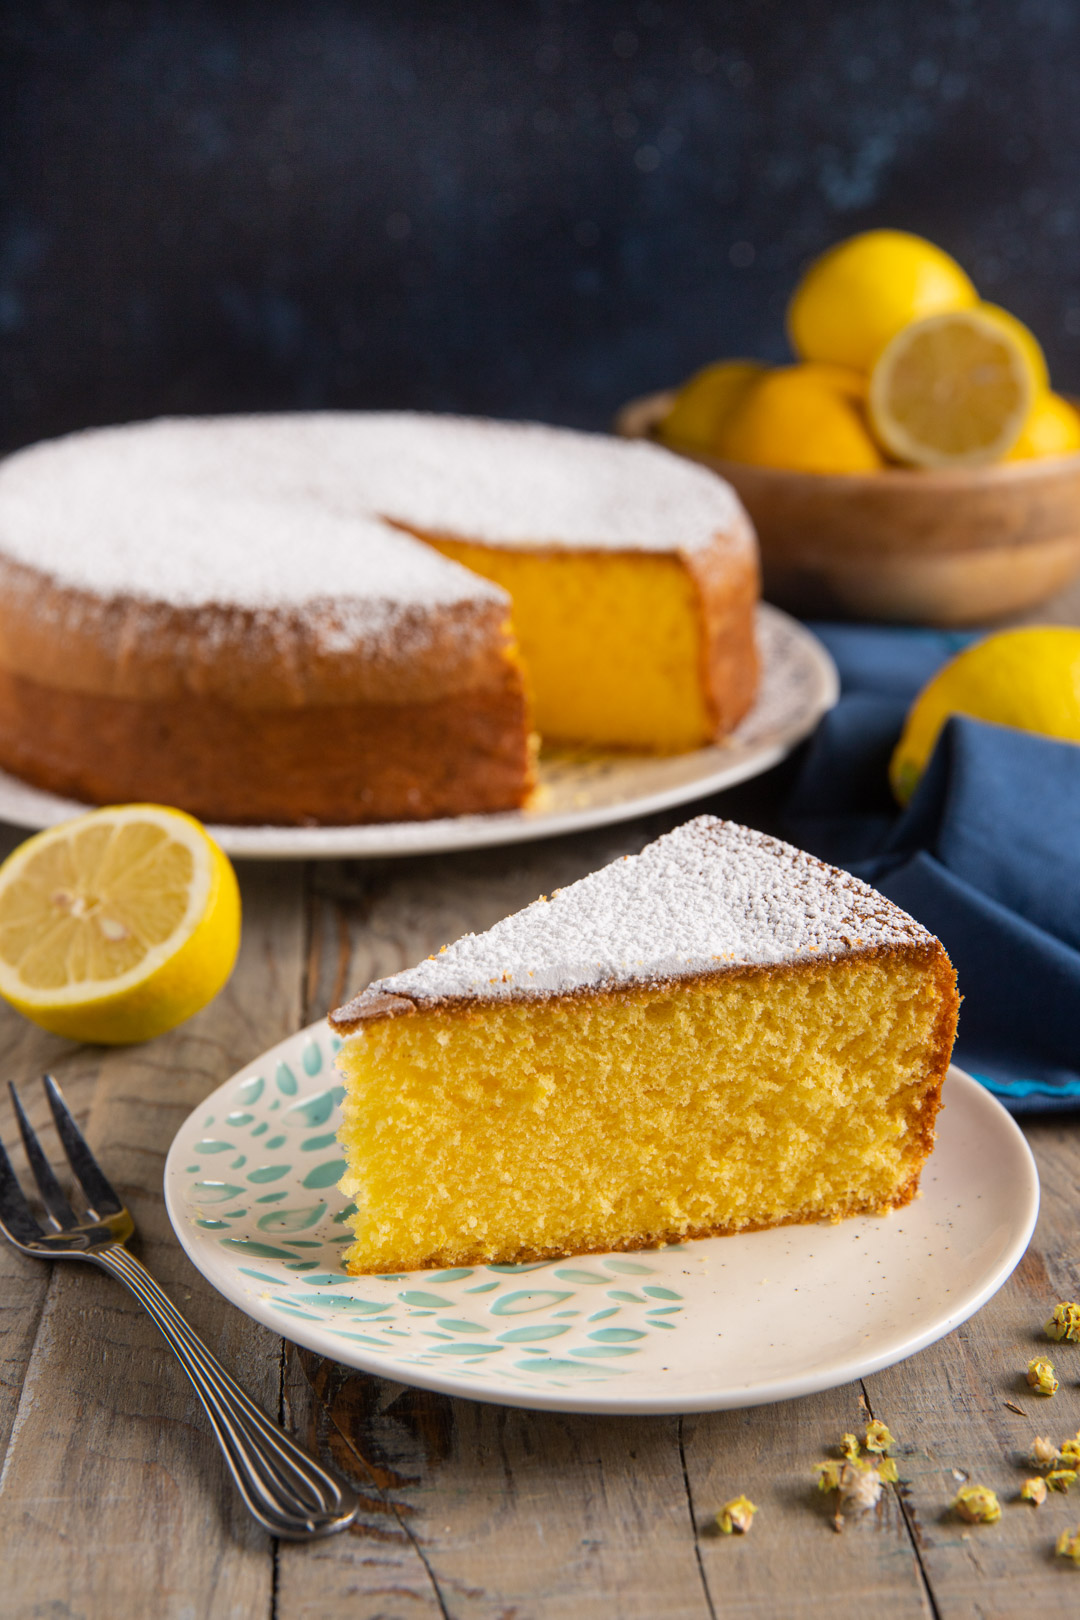 Una torta semplicissima, che assomiglia molto a una torta margherita o paradiso ma ha in più uno spiccato aroma agrumato di limone